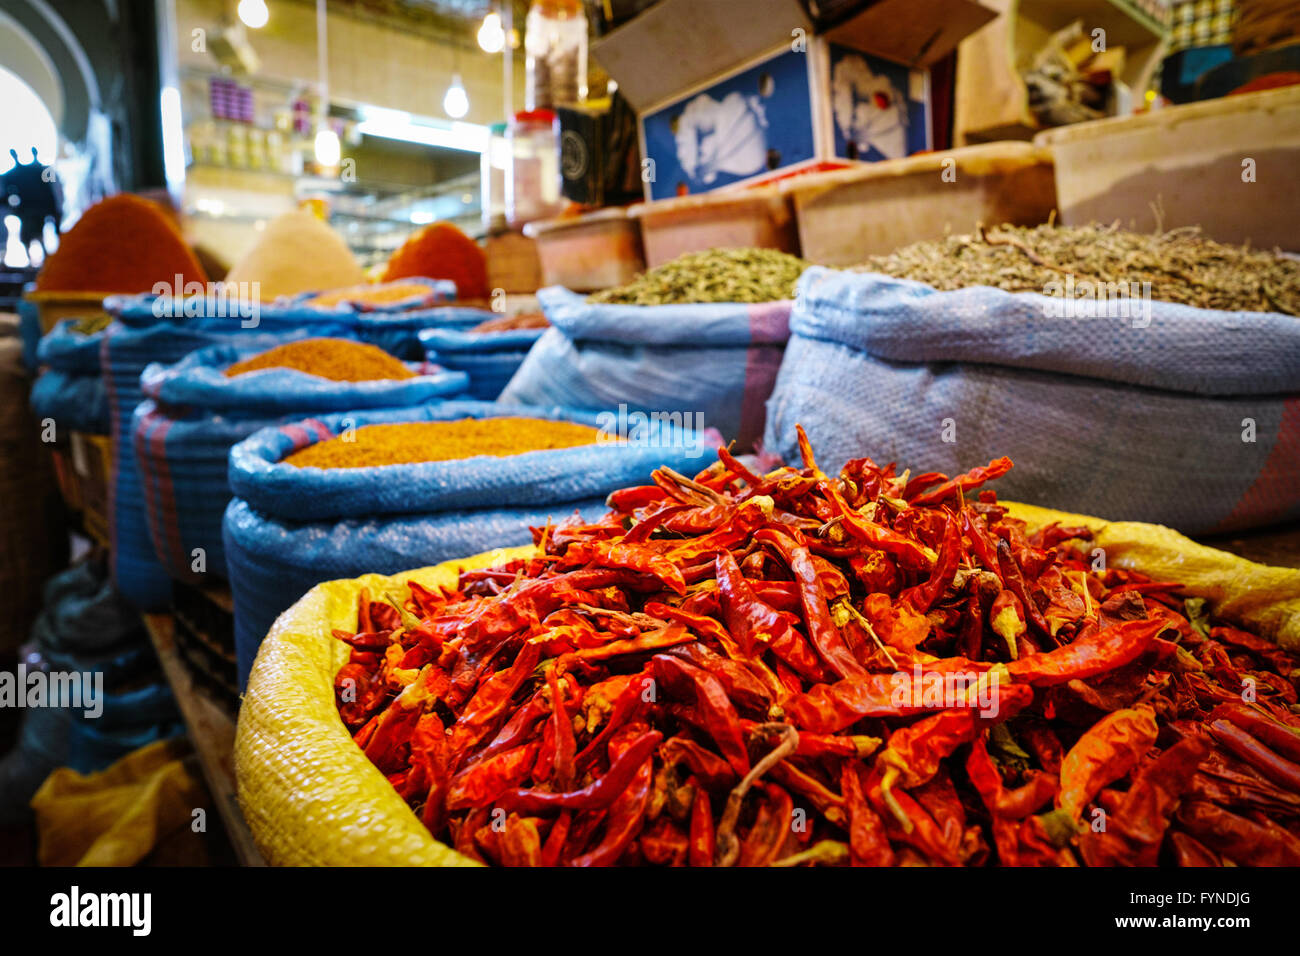 Moroccan indoor spice market in Meknes Stock Photo